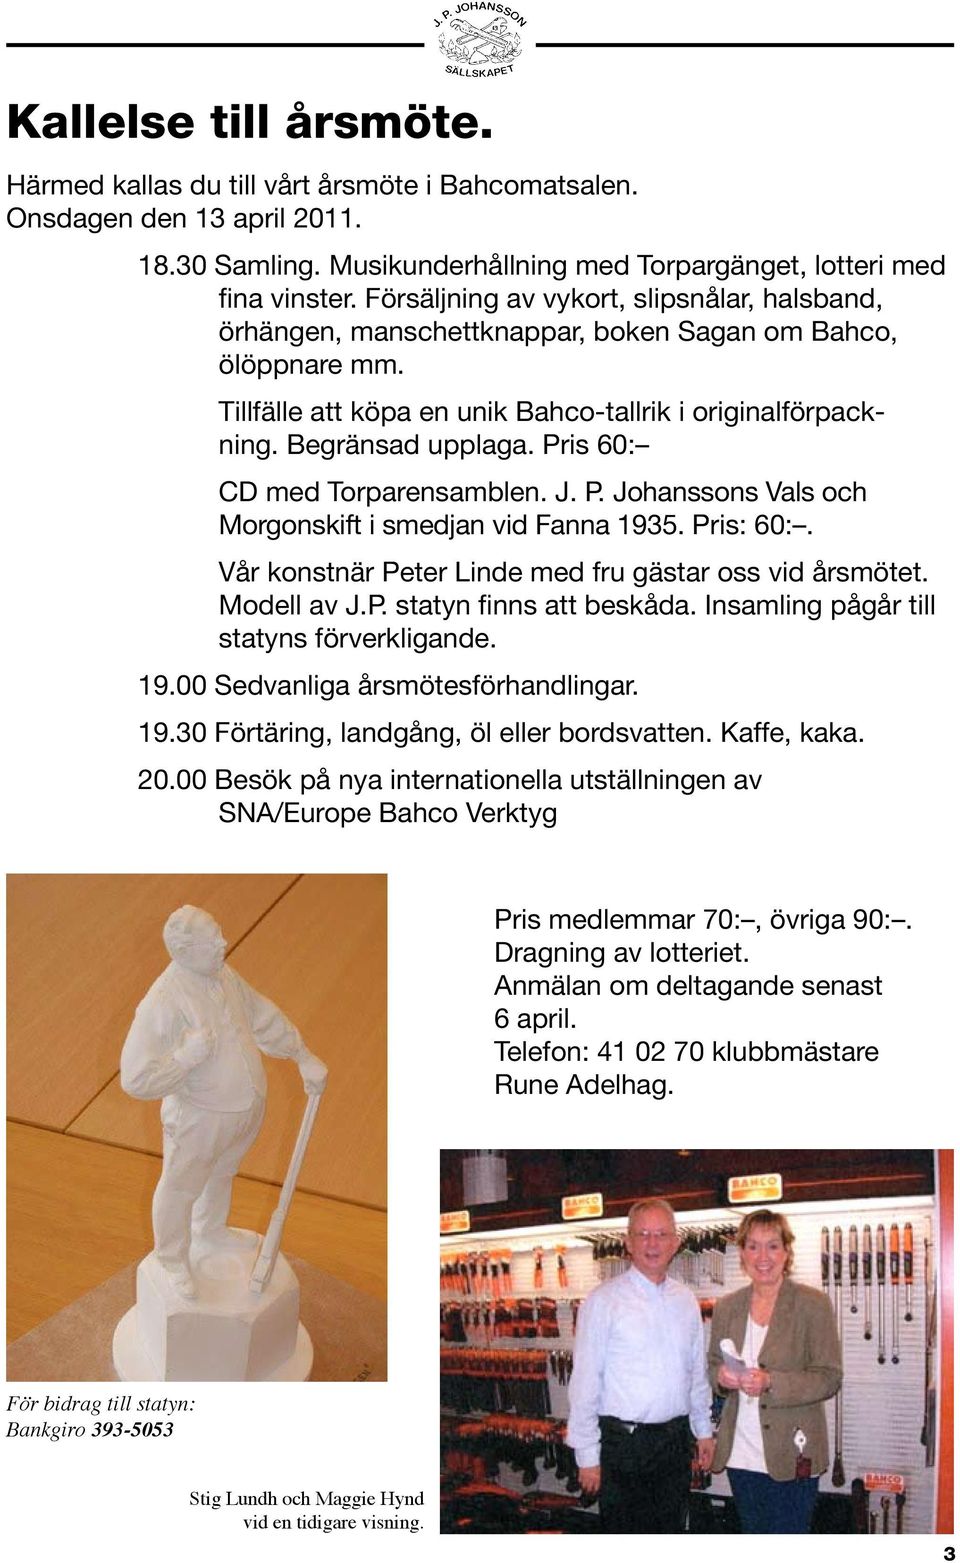 Pris 60: CD med Torparensamblen. J. P. Johanssons Vals och Morgonskift i smedjan vid Fanna 1935. Pris: 60:. Vår konstnär Peter Linde med fru gästar oss vid årsmötet. Modell av J.P. statyn finns att beskåda.